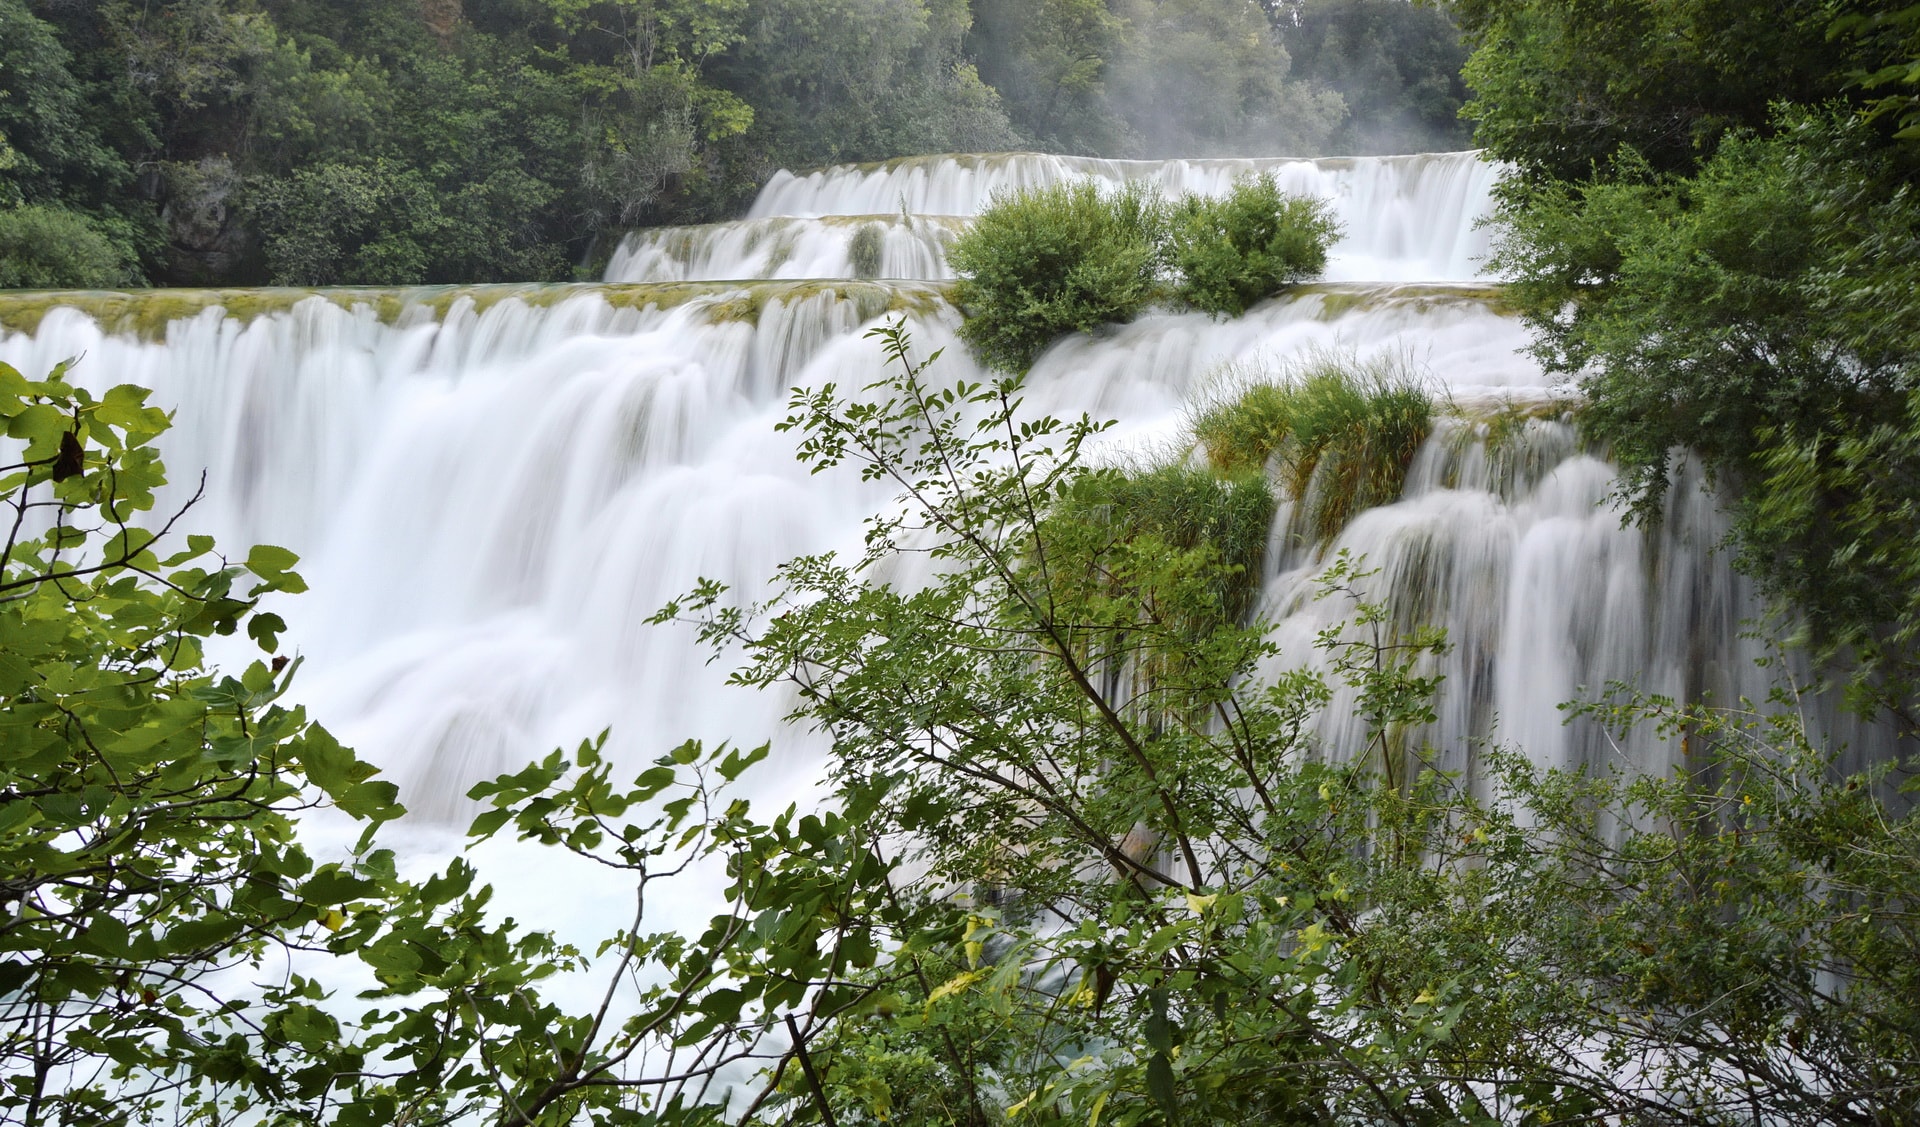 The upper part of Skradinski buk waterfall